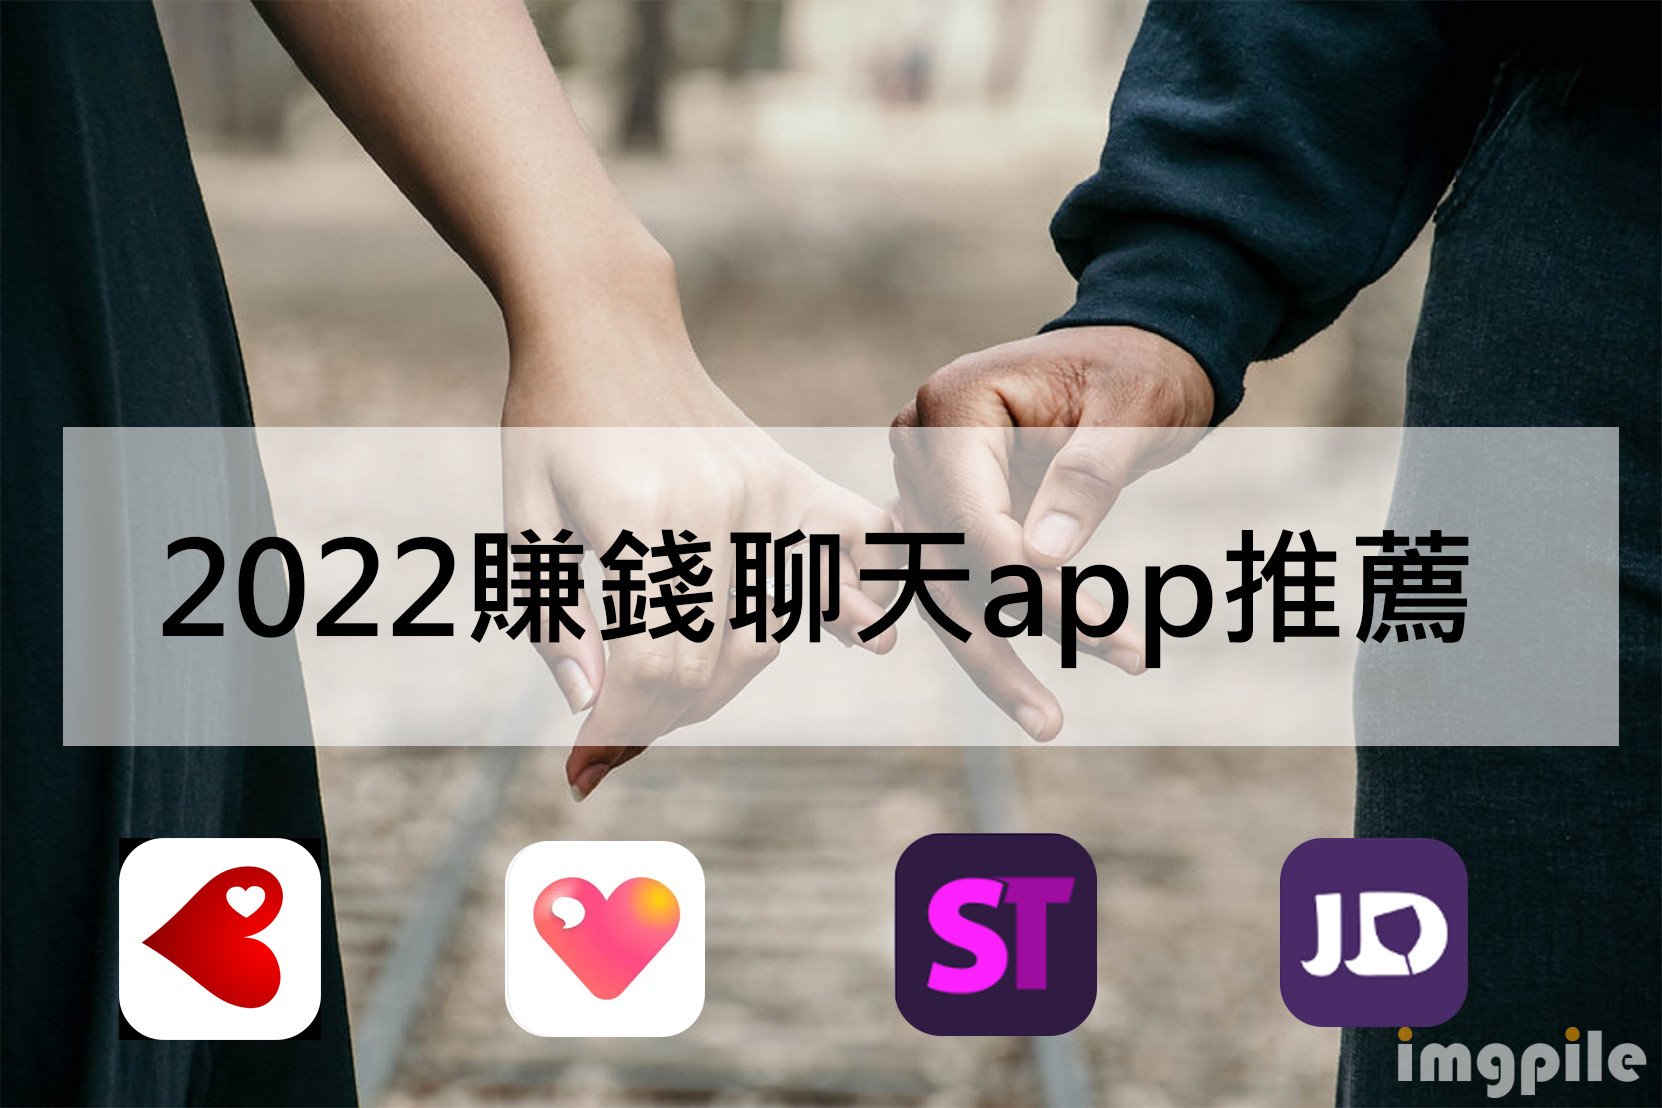 【2022交友賺錢app評比】交友原來可以增加收入? 4個交